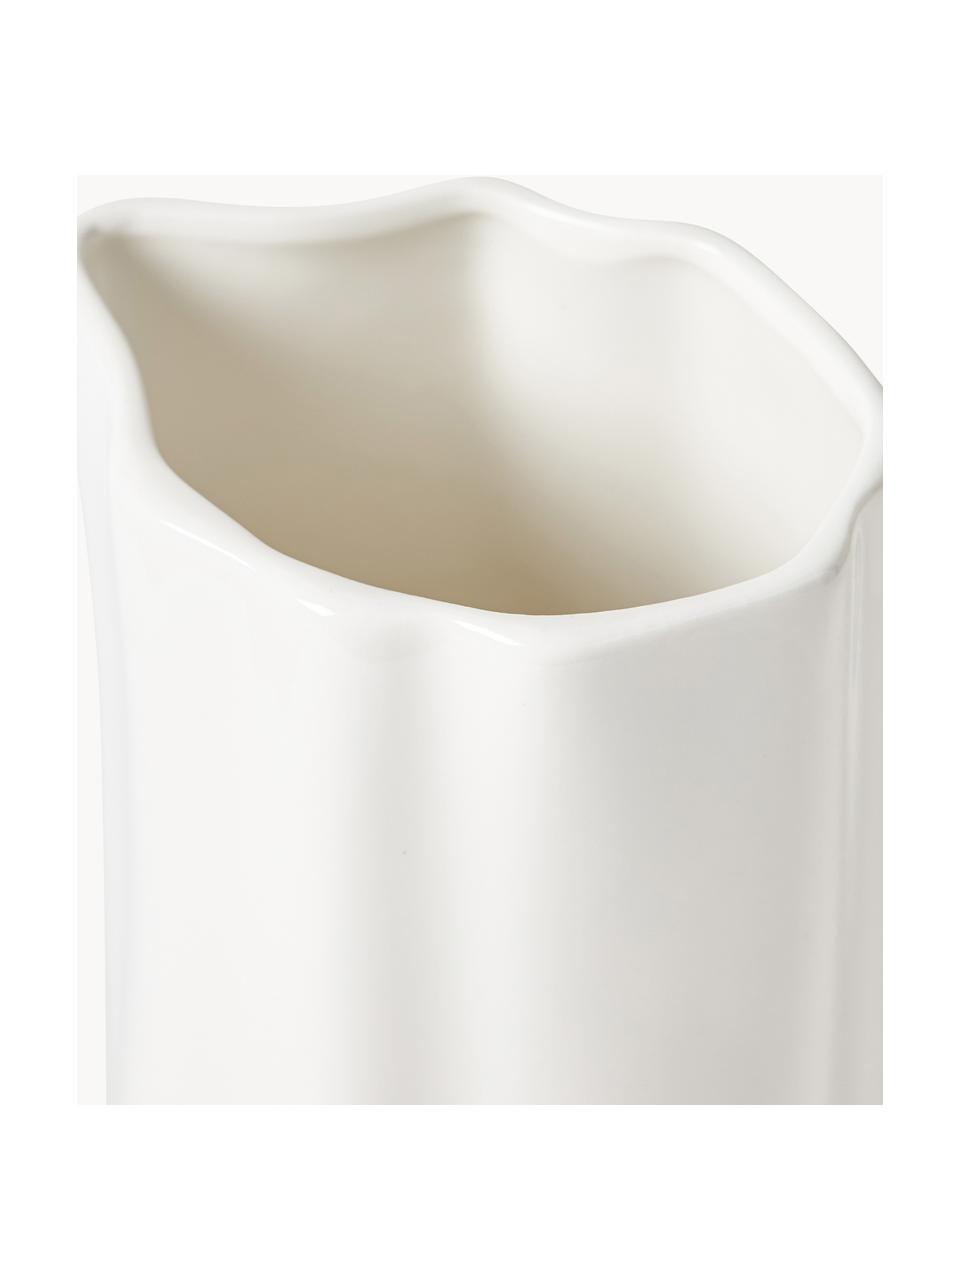 Porzellan-Wasserkaraffe Joana in organischer Form, 1.6 L, Porzellan, Weiss, 1.6 L